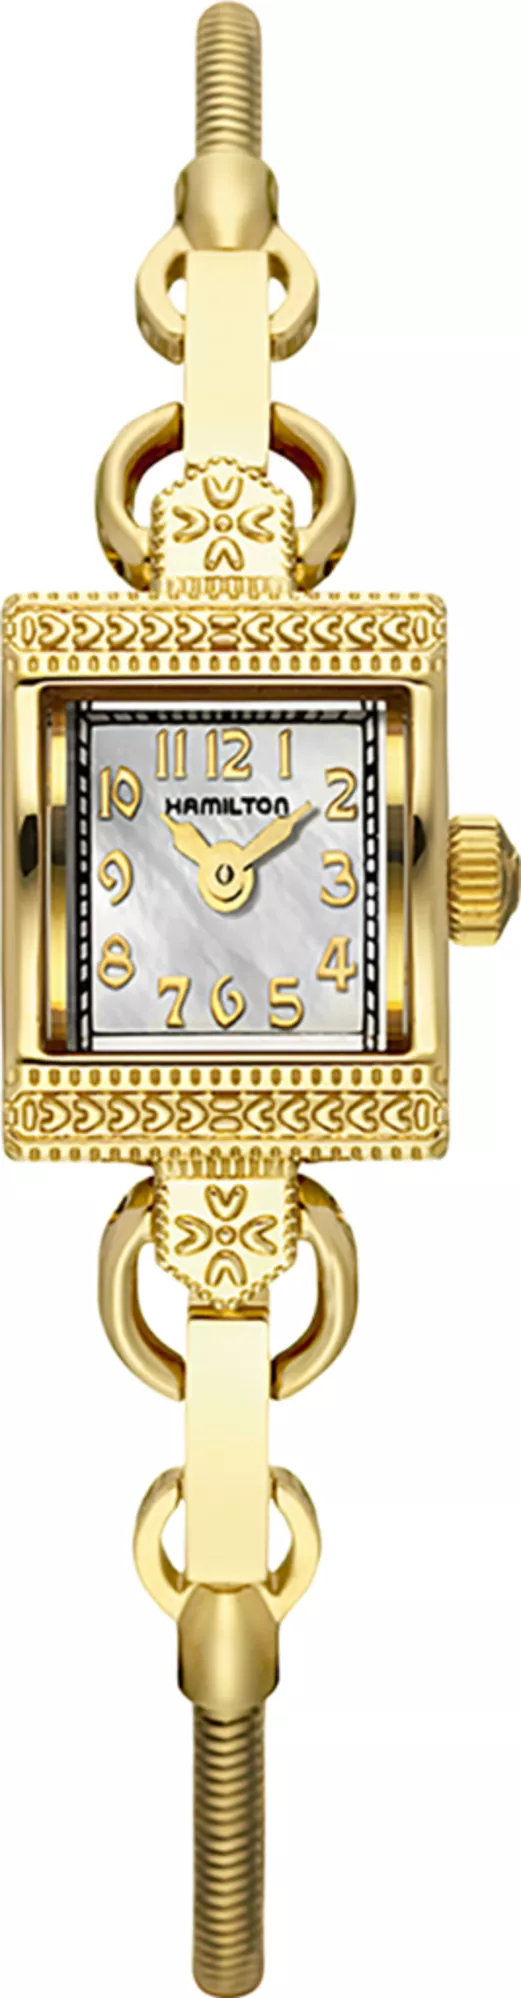 Часы Hamilton H31231113